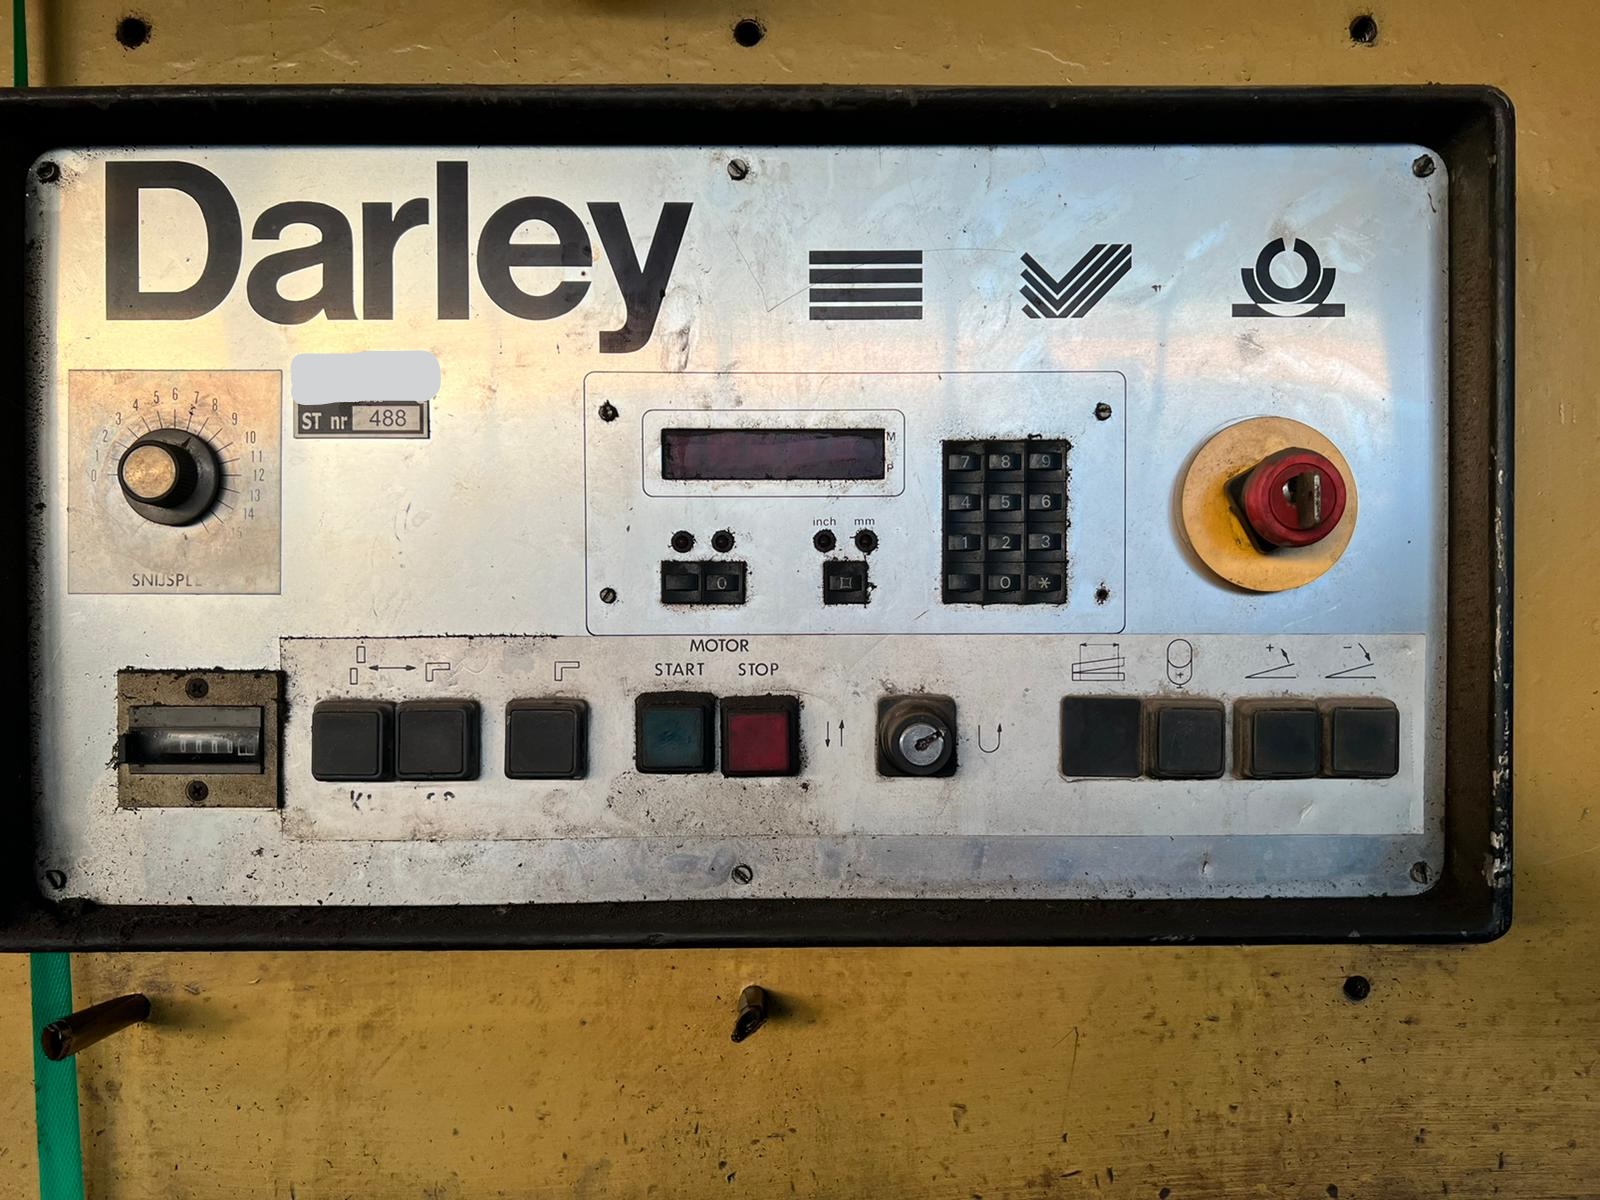 5666-darley 13 x 6000 1990.05